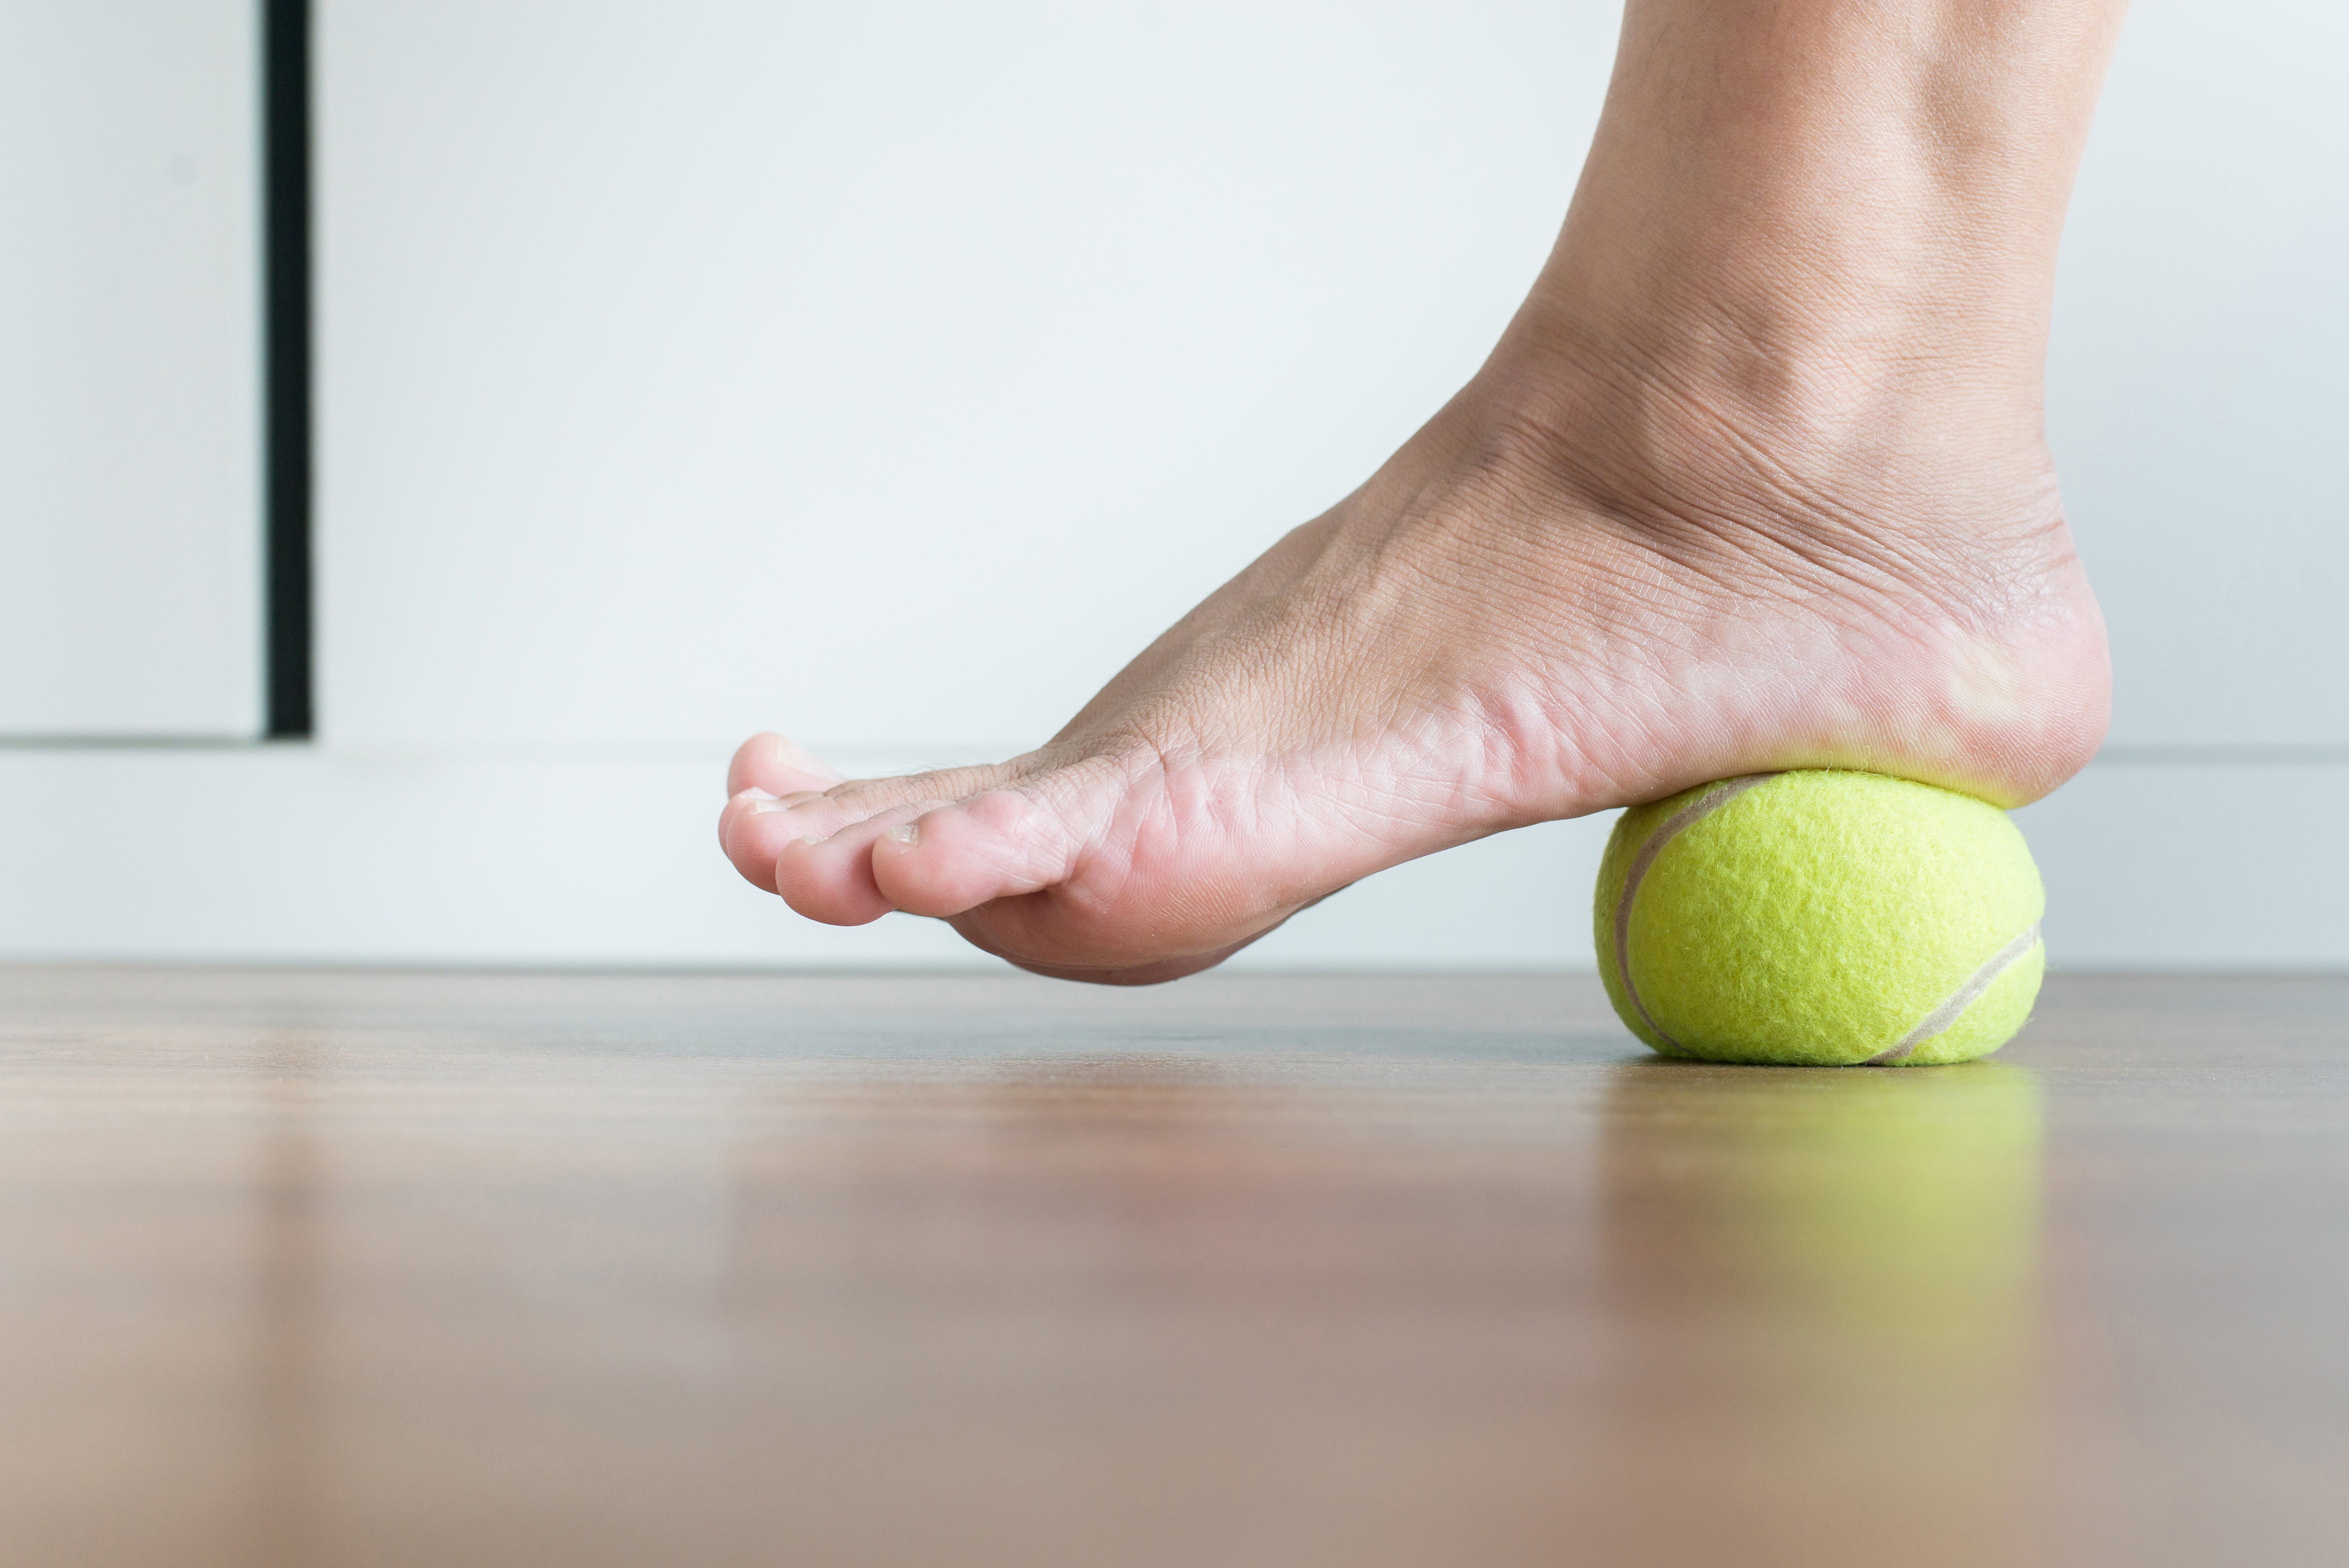 esercizio con pallina da tennis per pianta del piede